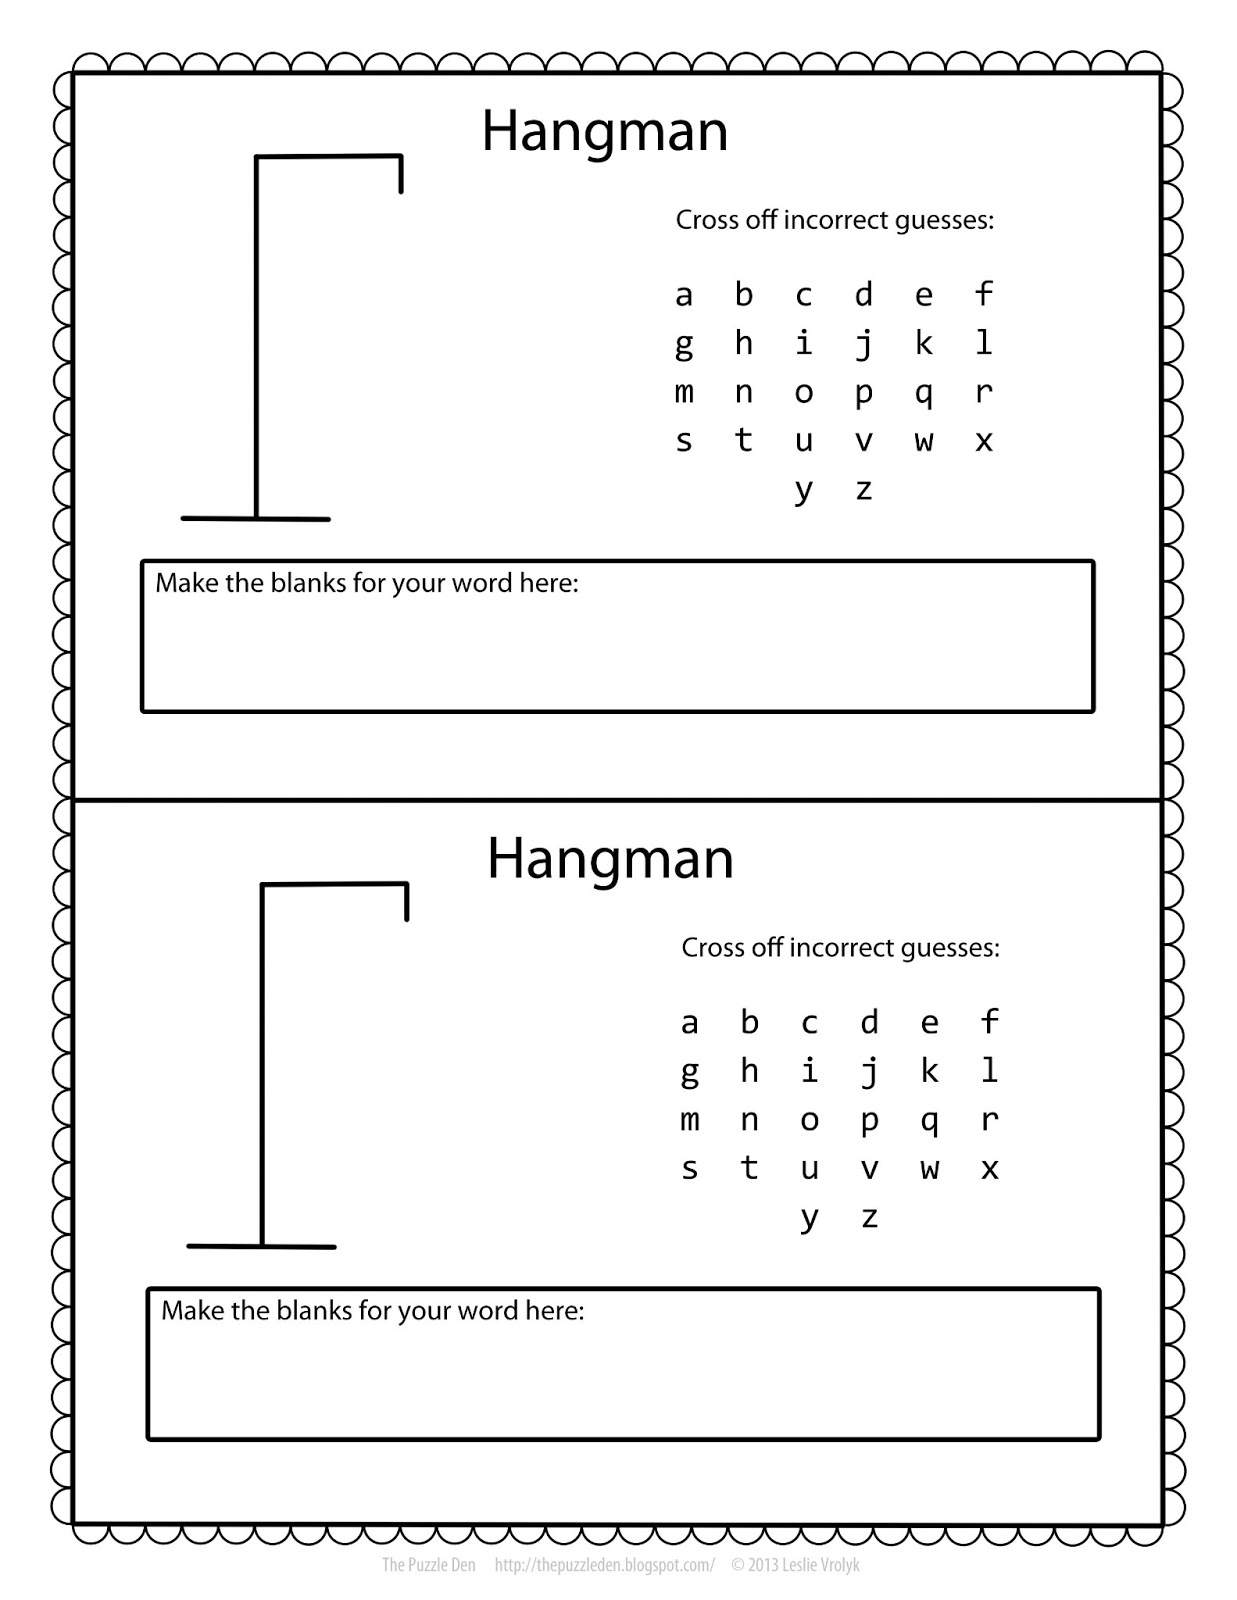 Hangman Text Template